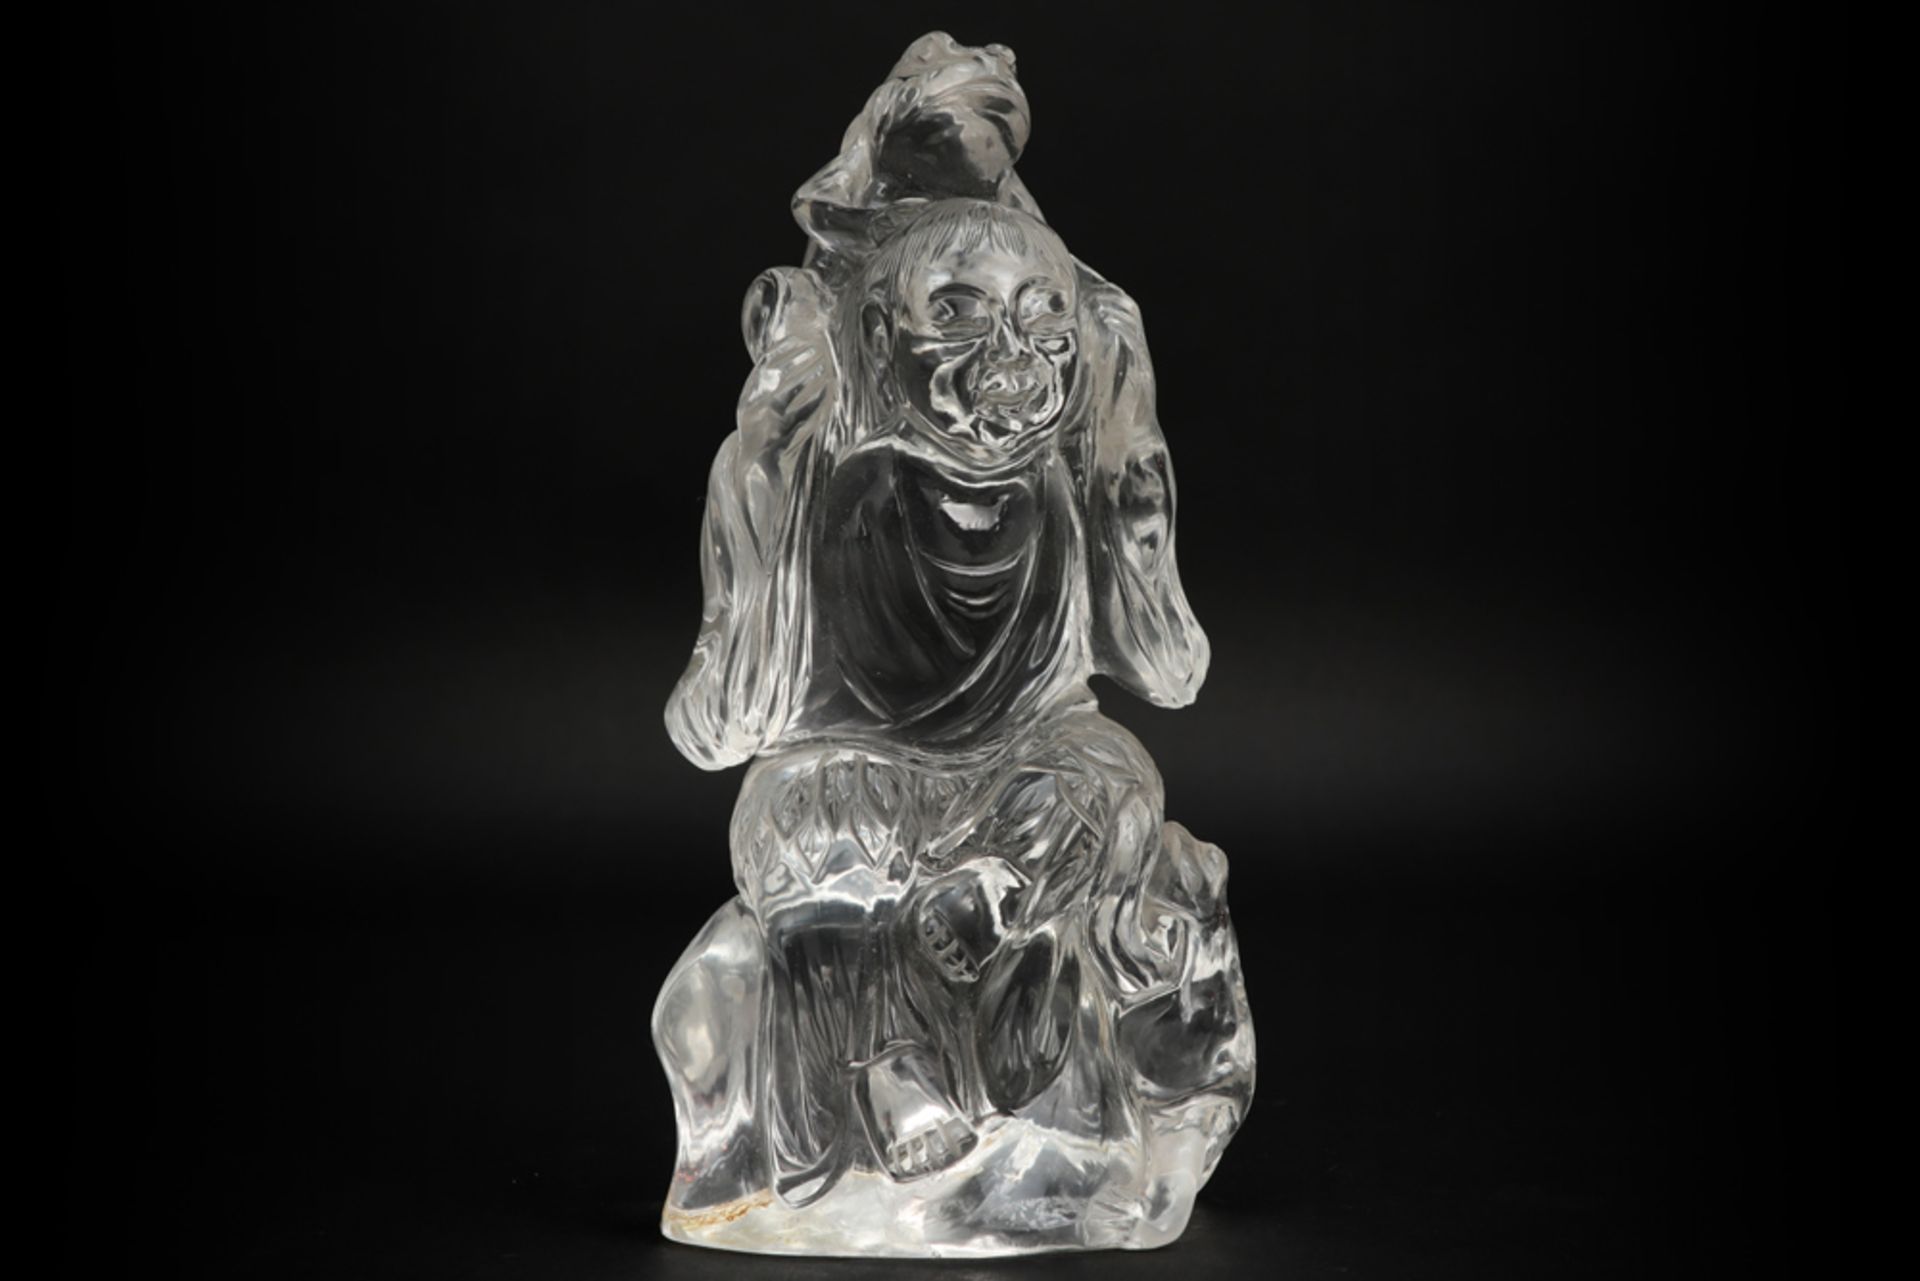 Chinese rock crystal sculpture || Chinese sculptuur in bergkristal : "Man met kikker op de